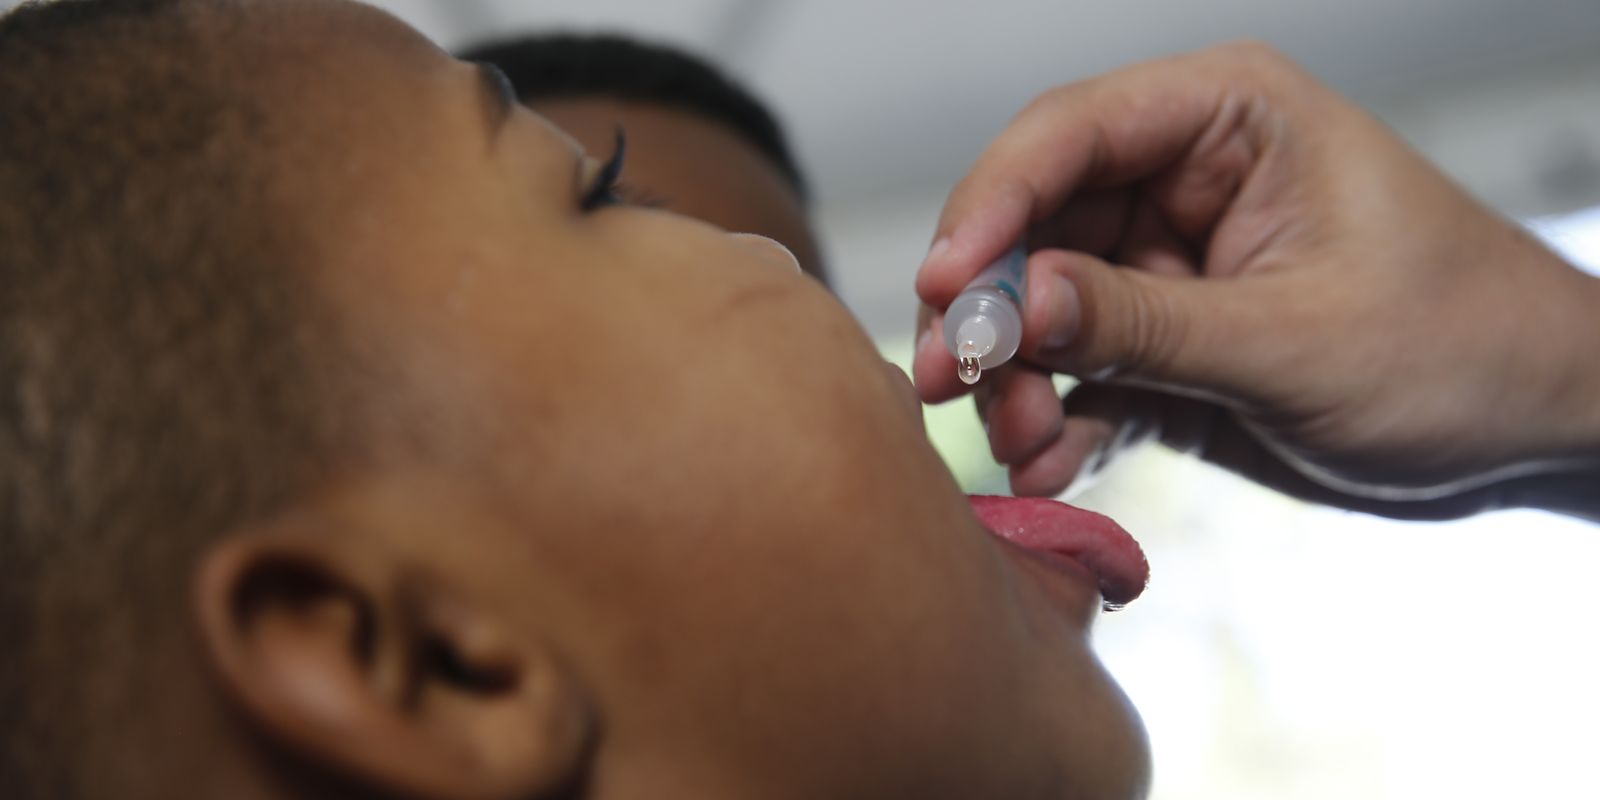 Vacinação contra poliomielite deve ser reforçada no Brasil